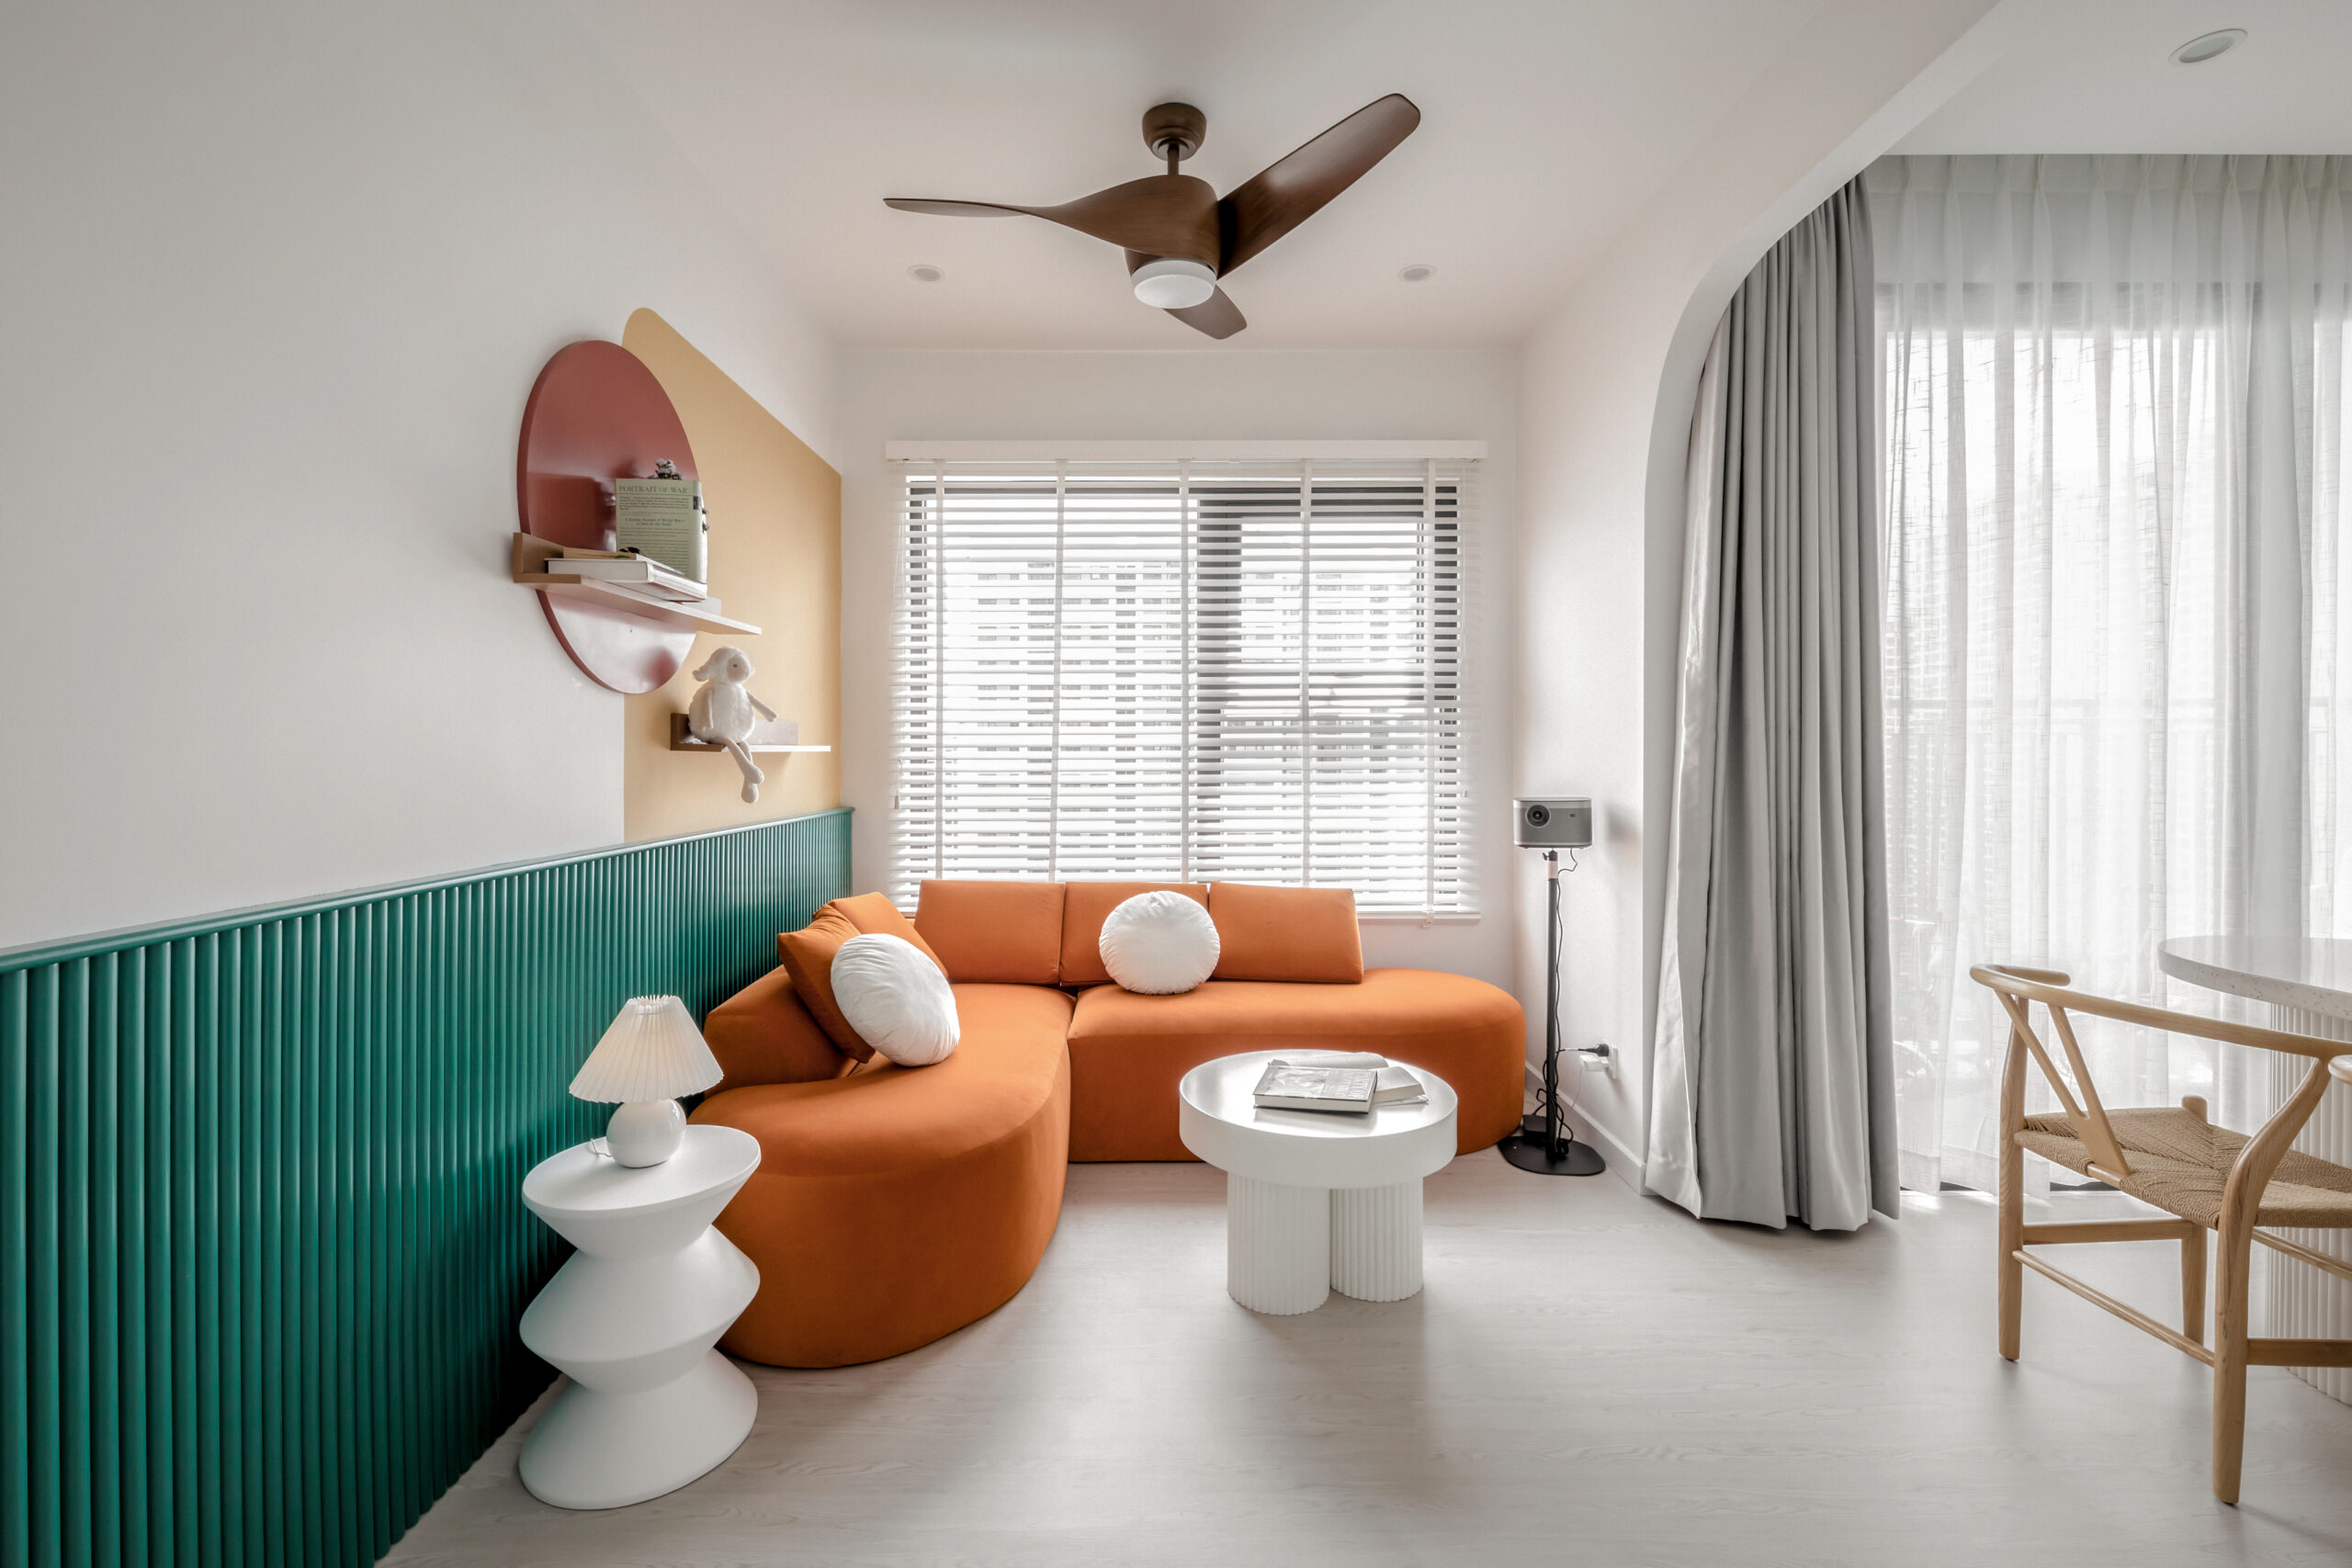 Sự kết hợp giữ tone cam hiện đại và tone xanh lá tạo sự nổi bật cho phòng khách